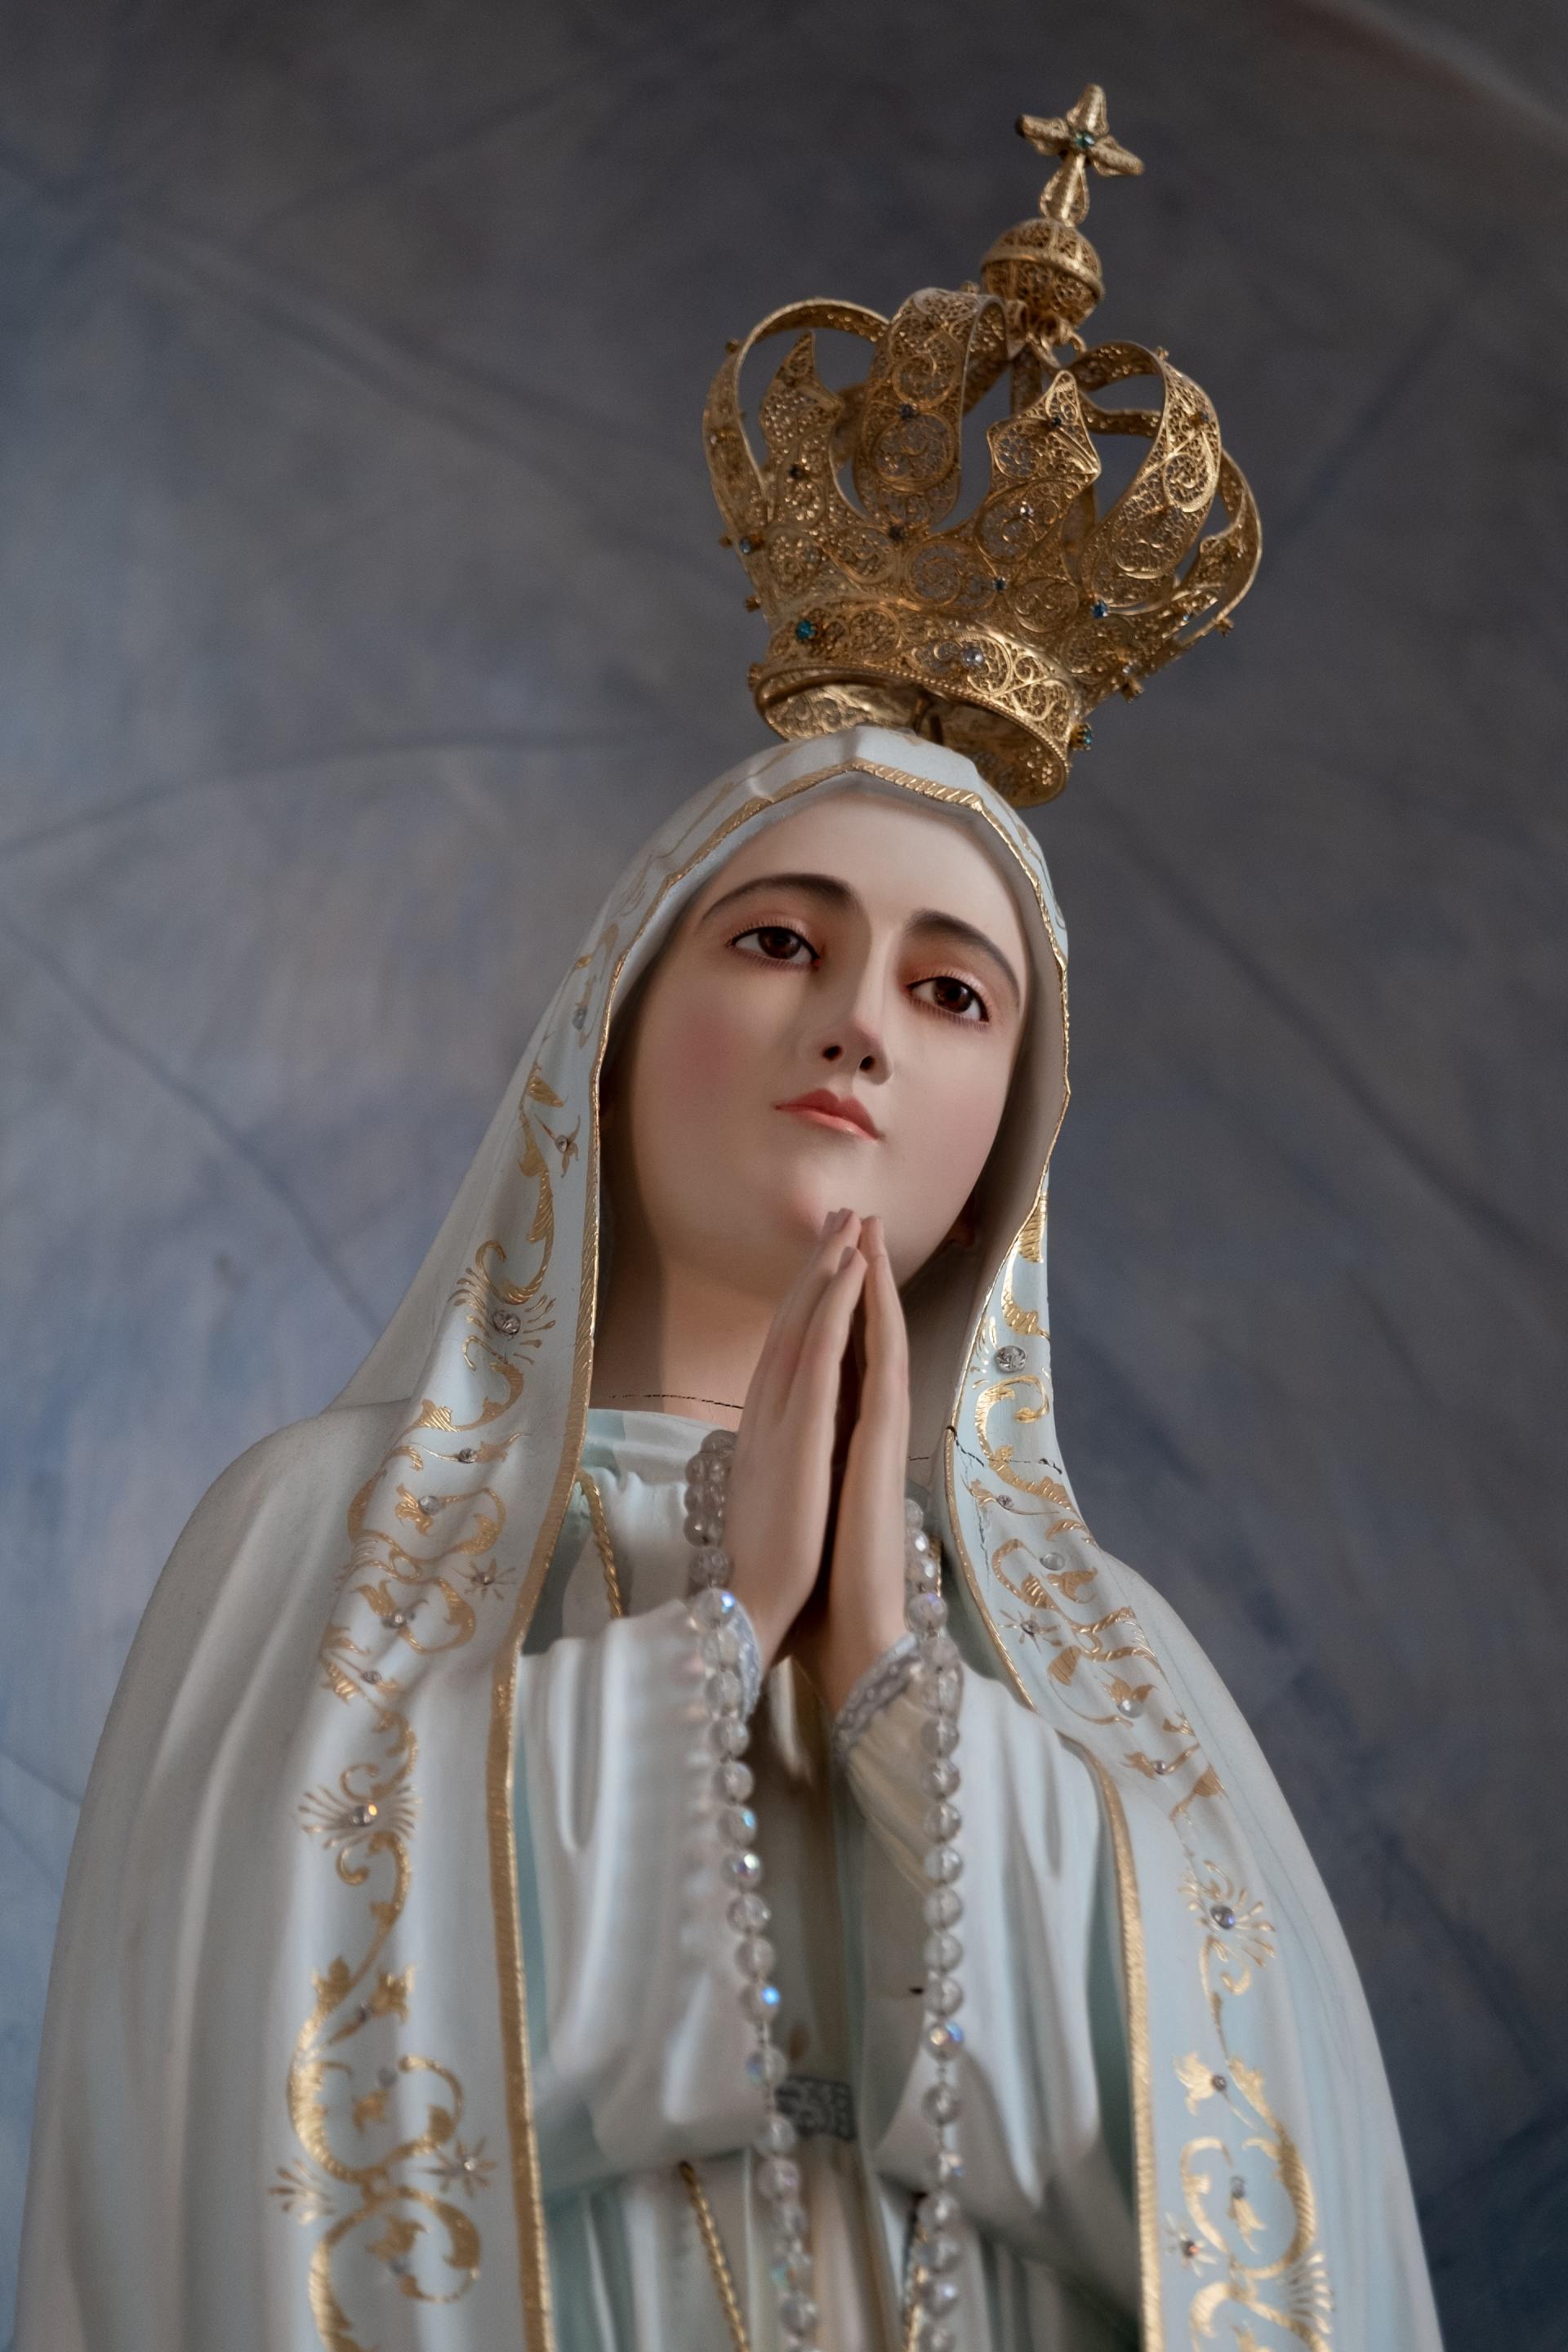 SANTUARIO MADONNA DI FATIMA Statua della Madonna turismo lisbona, pellegrinaggi a fatima dall'italia